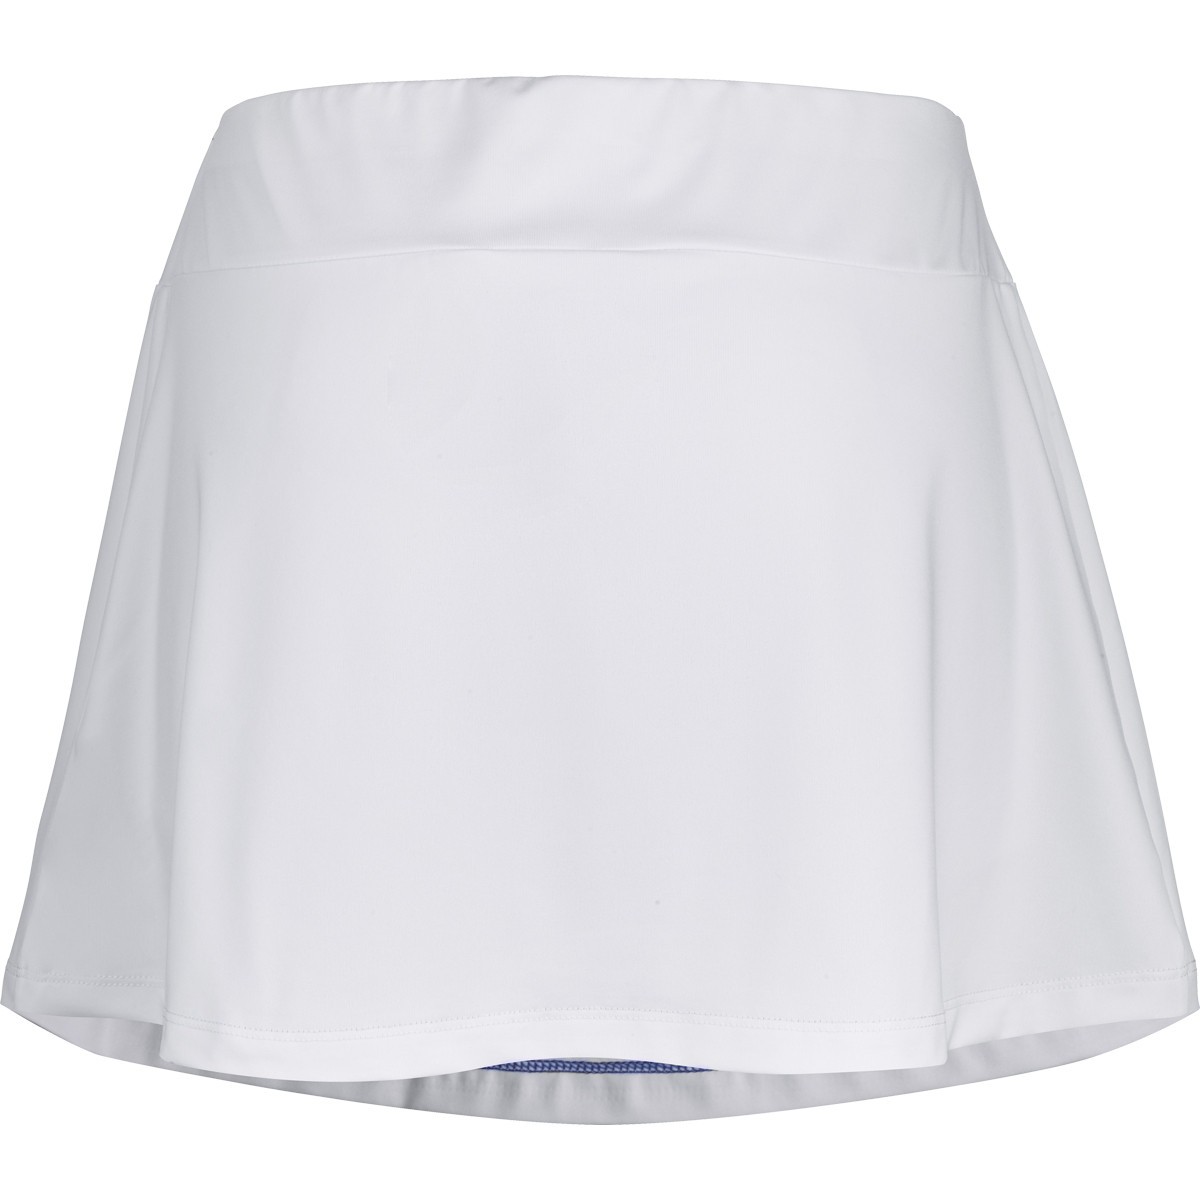 Теннисная юбка женская Babolat Play Skirt Women white/blue